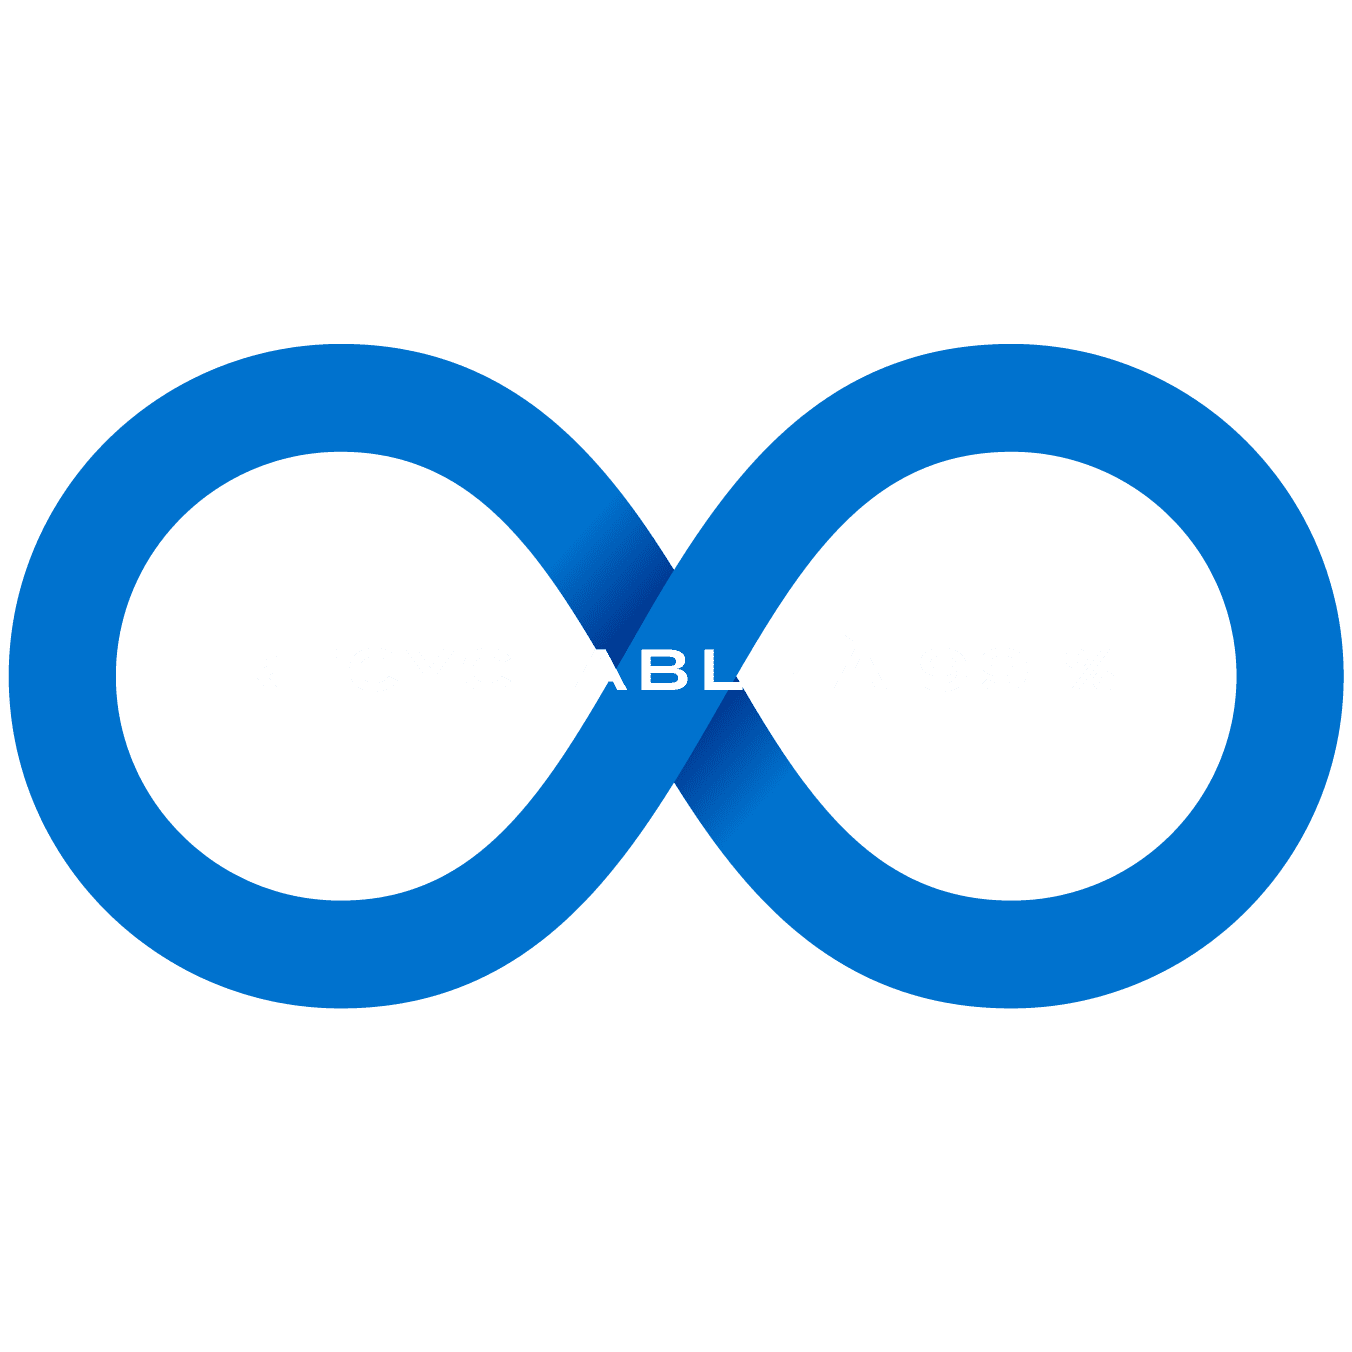 99% Recyclability